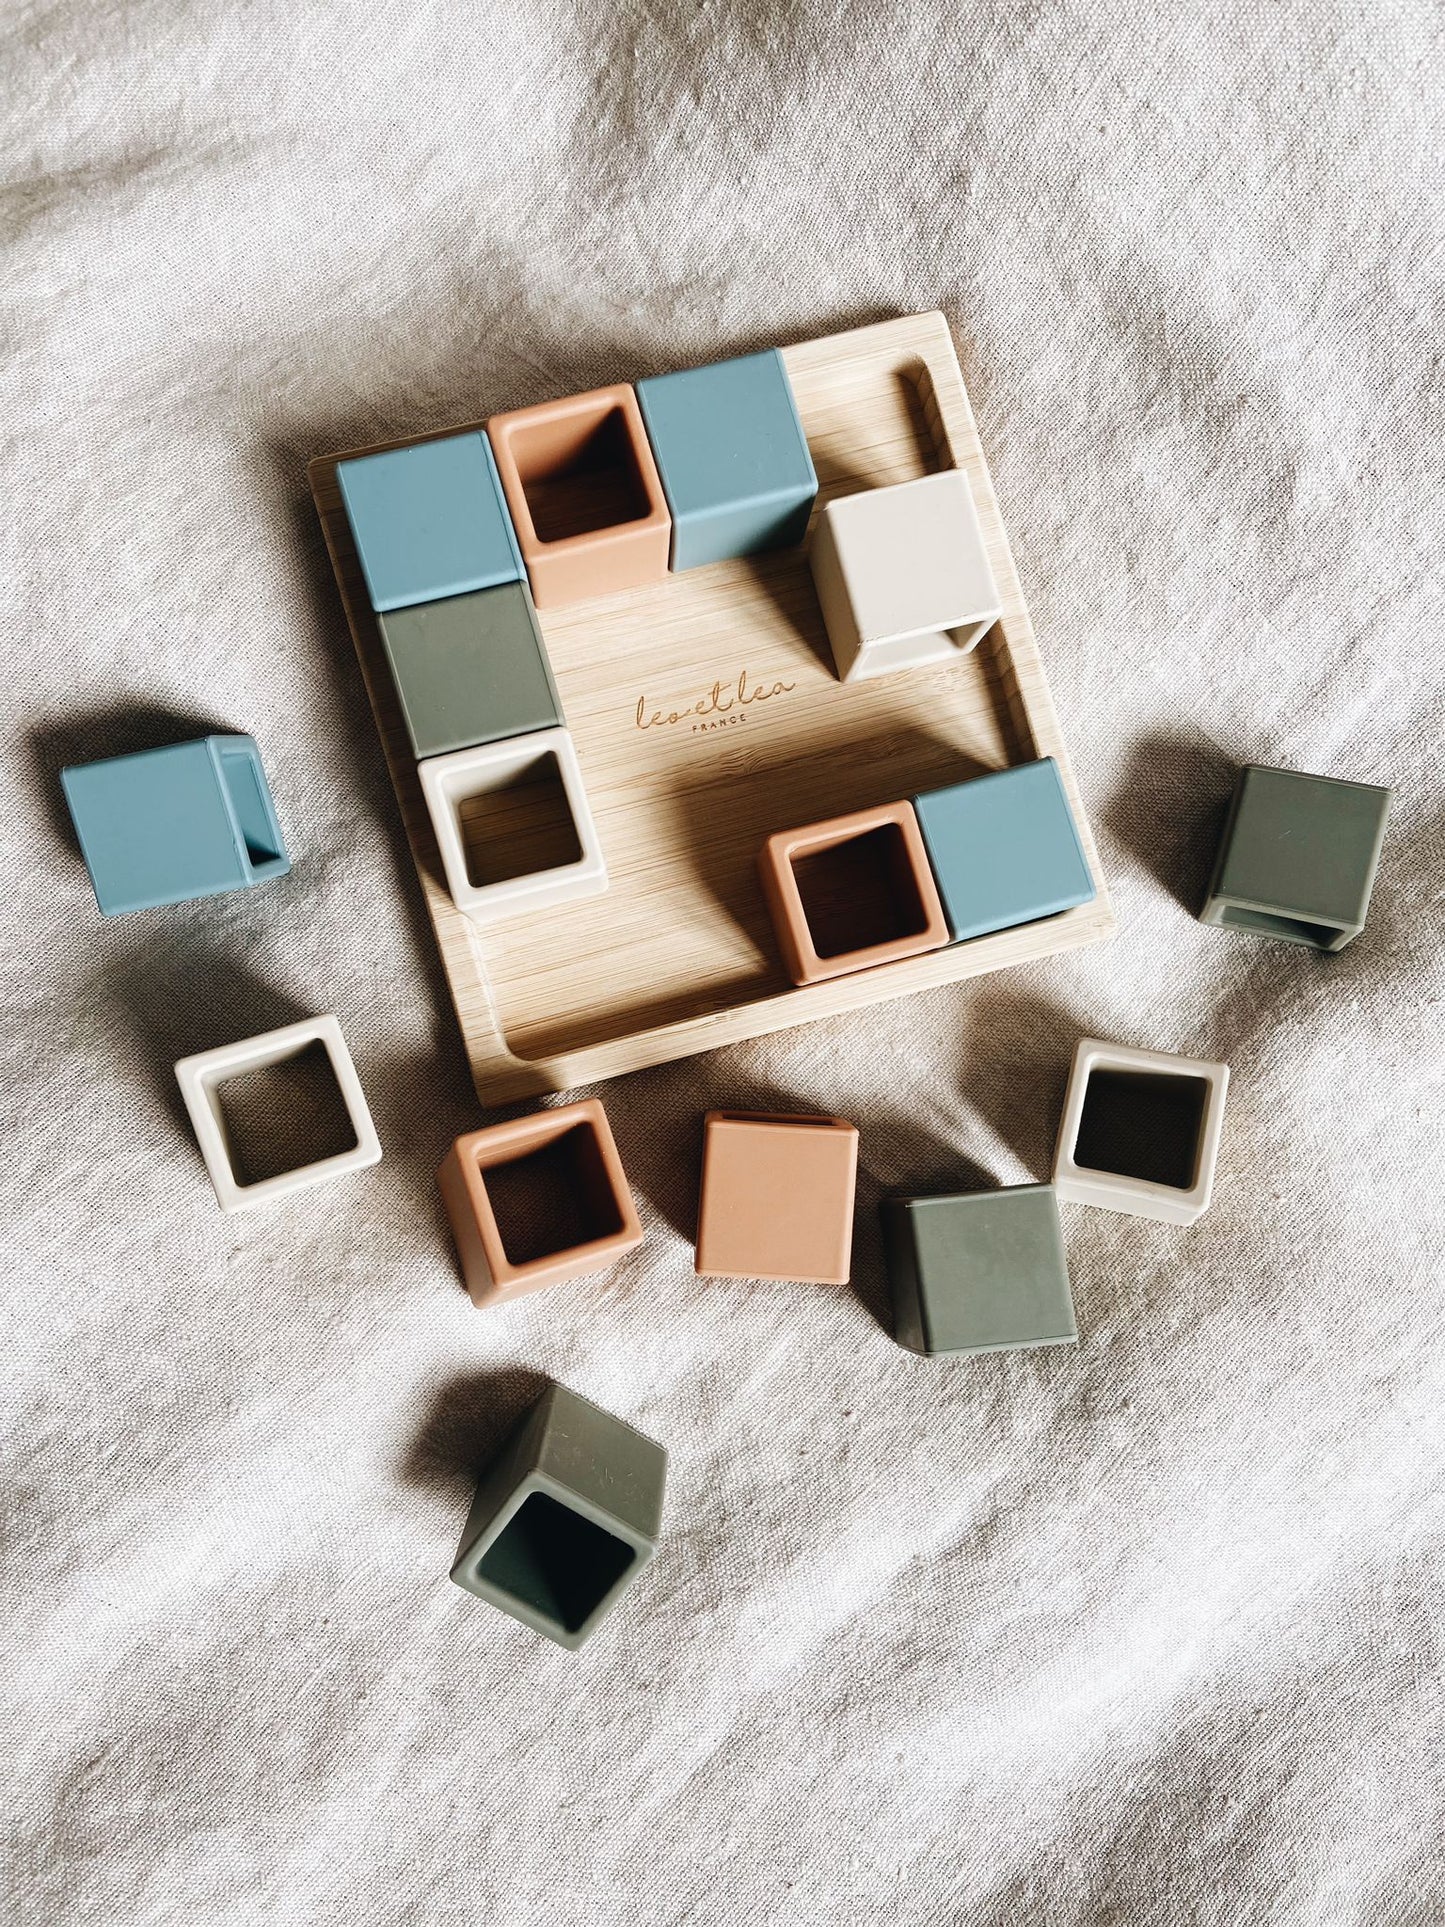 Cube Puzzle, Cubes de construction, Jouet éducatif